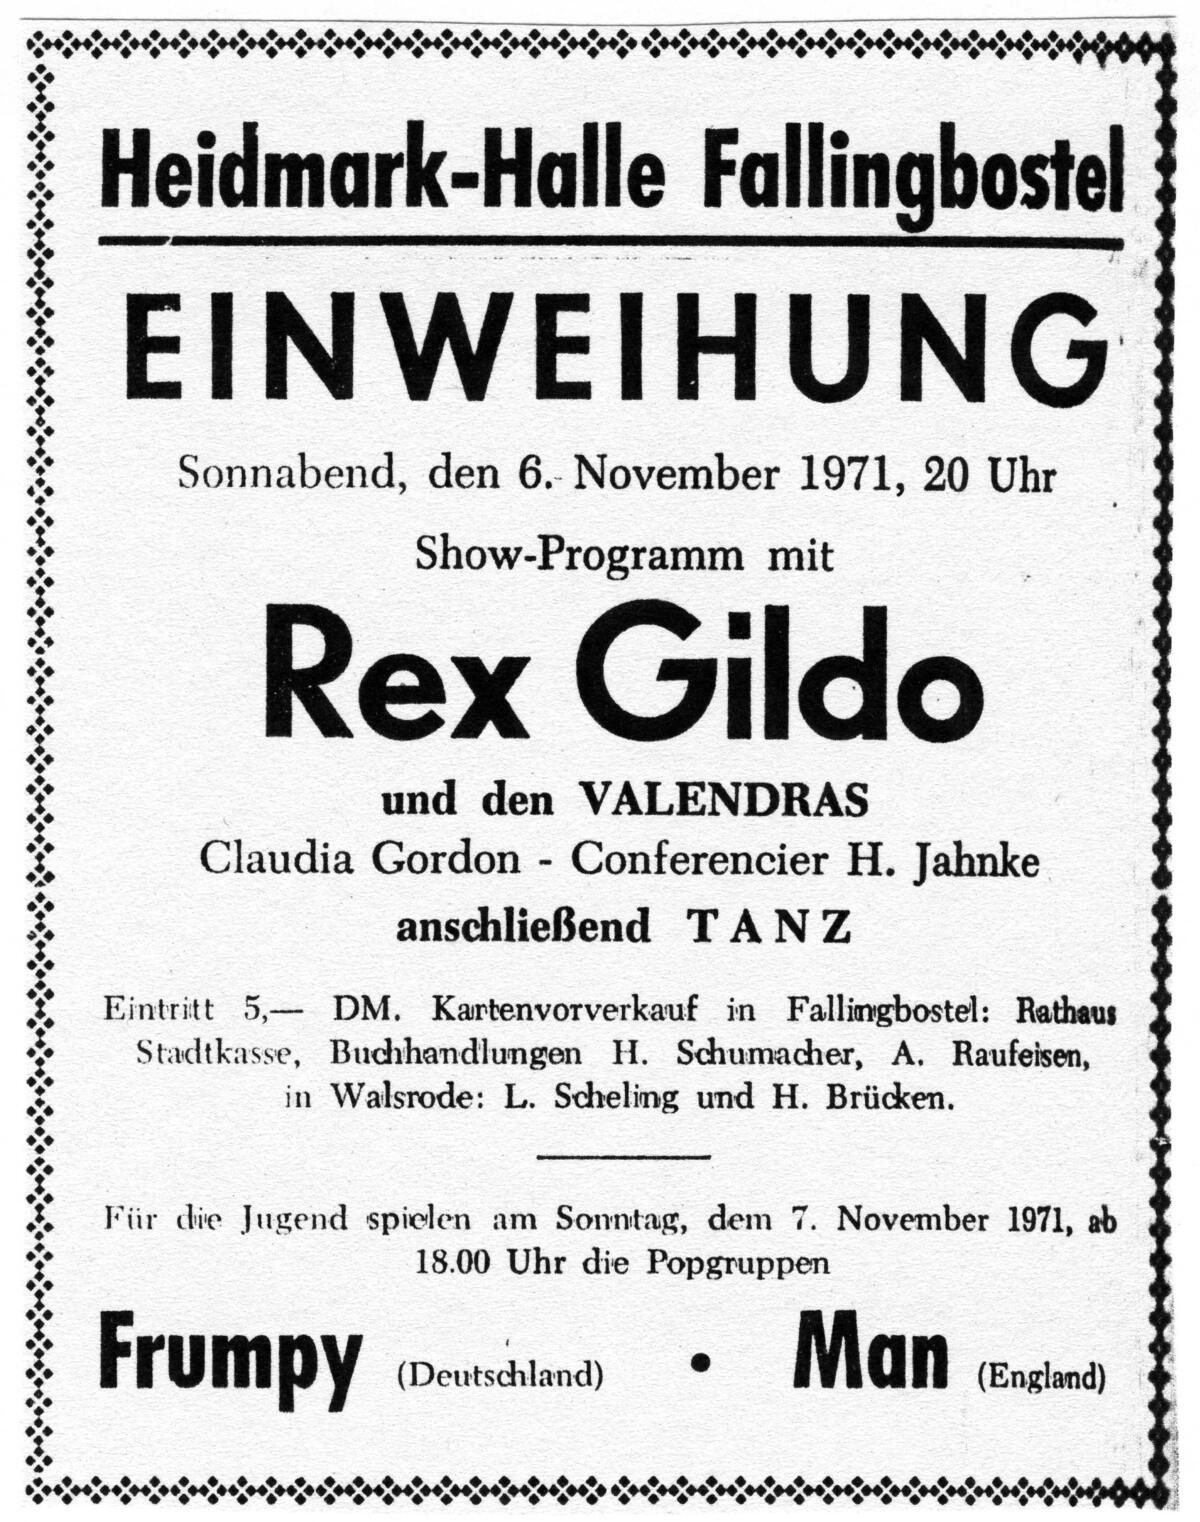 Bild vergrößern: Anzeige für das Eröffnungskonzert in der Heidmark-Halle mit Rex Gildo